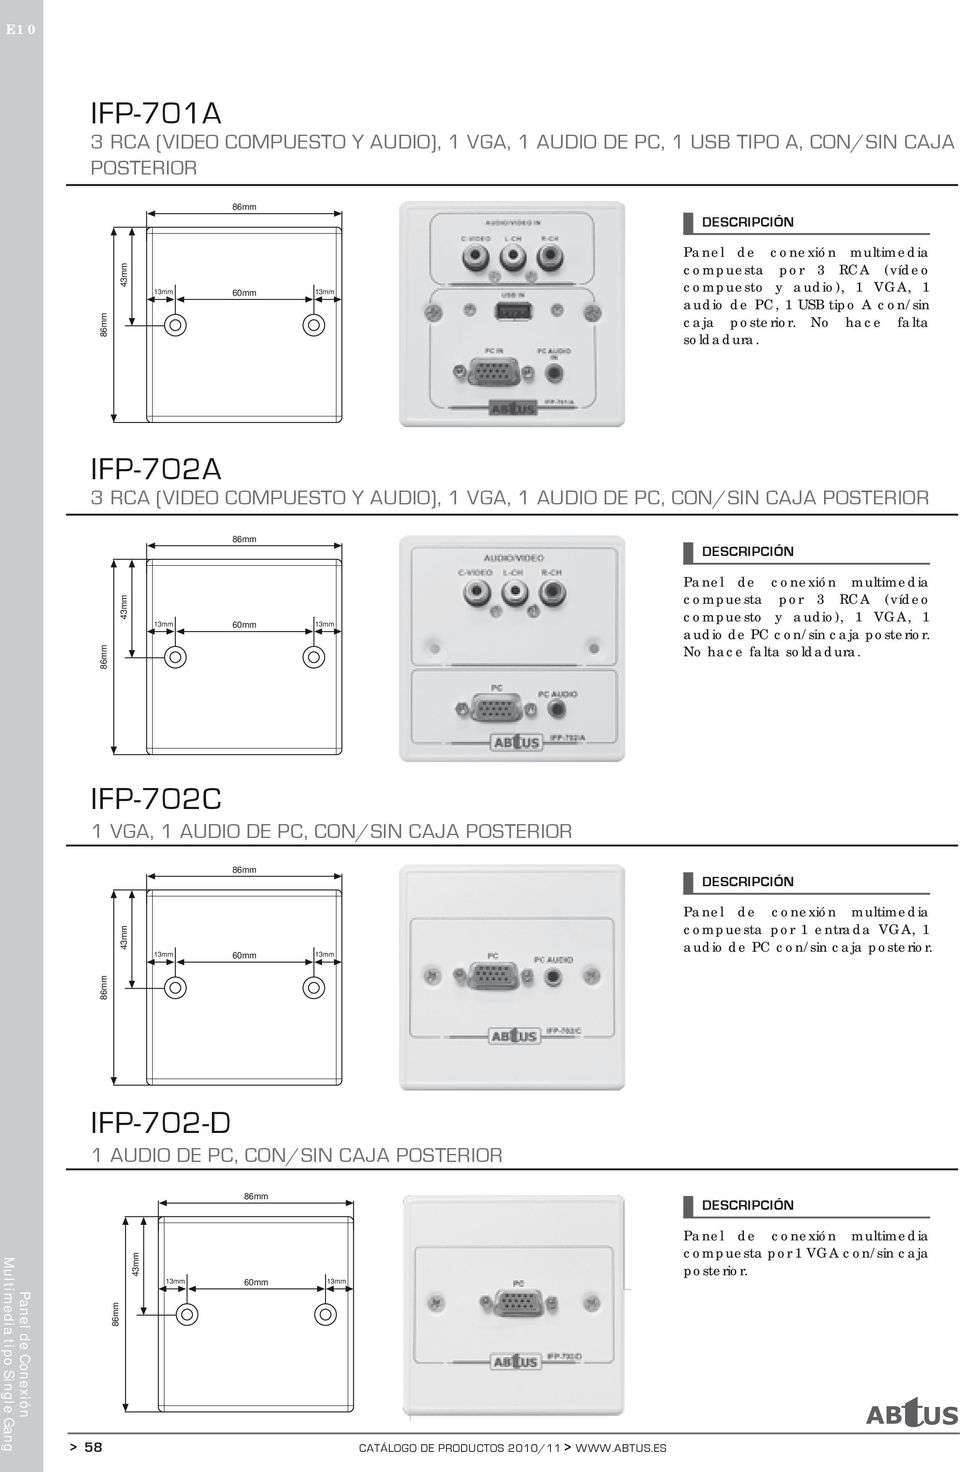 IFP-702A 3 RCA (VIDEO COMPUESTO Y AUDIO), 1 VGA, 1 AUDIO DE PC, CON/SIN CAJA POSTERIOR No hace falta soldadura.